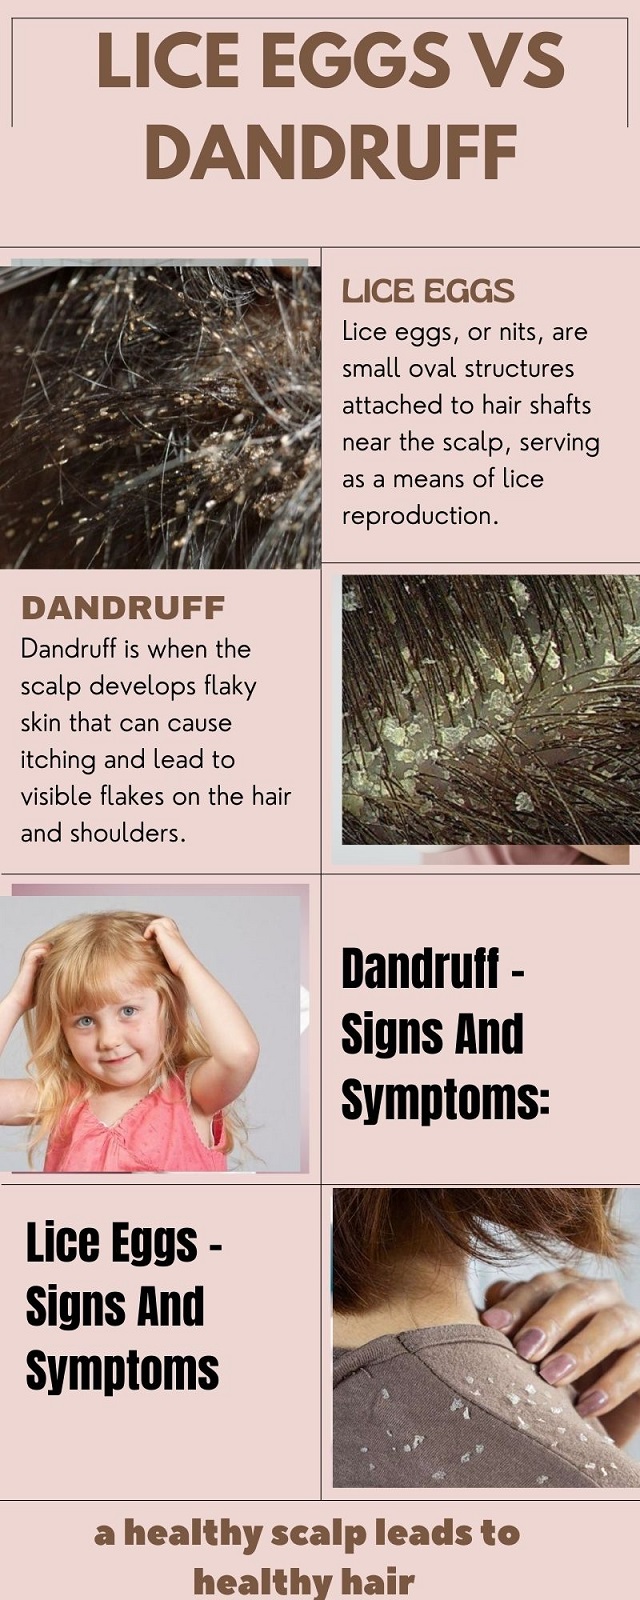 head lice eggs vs dandruff